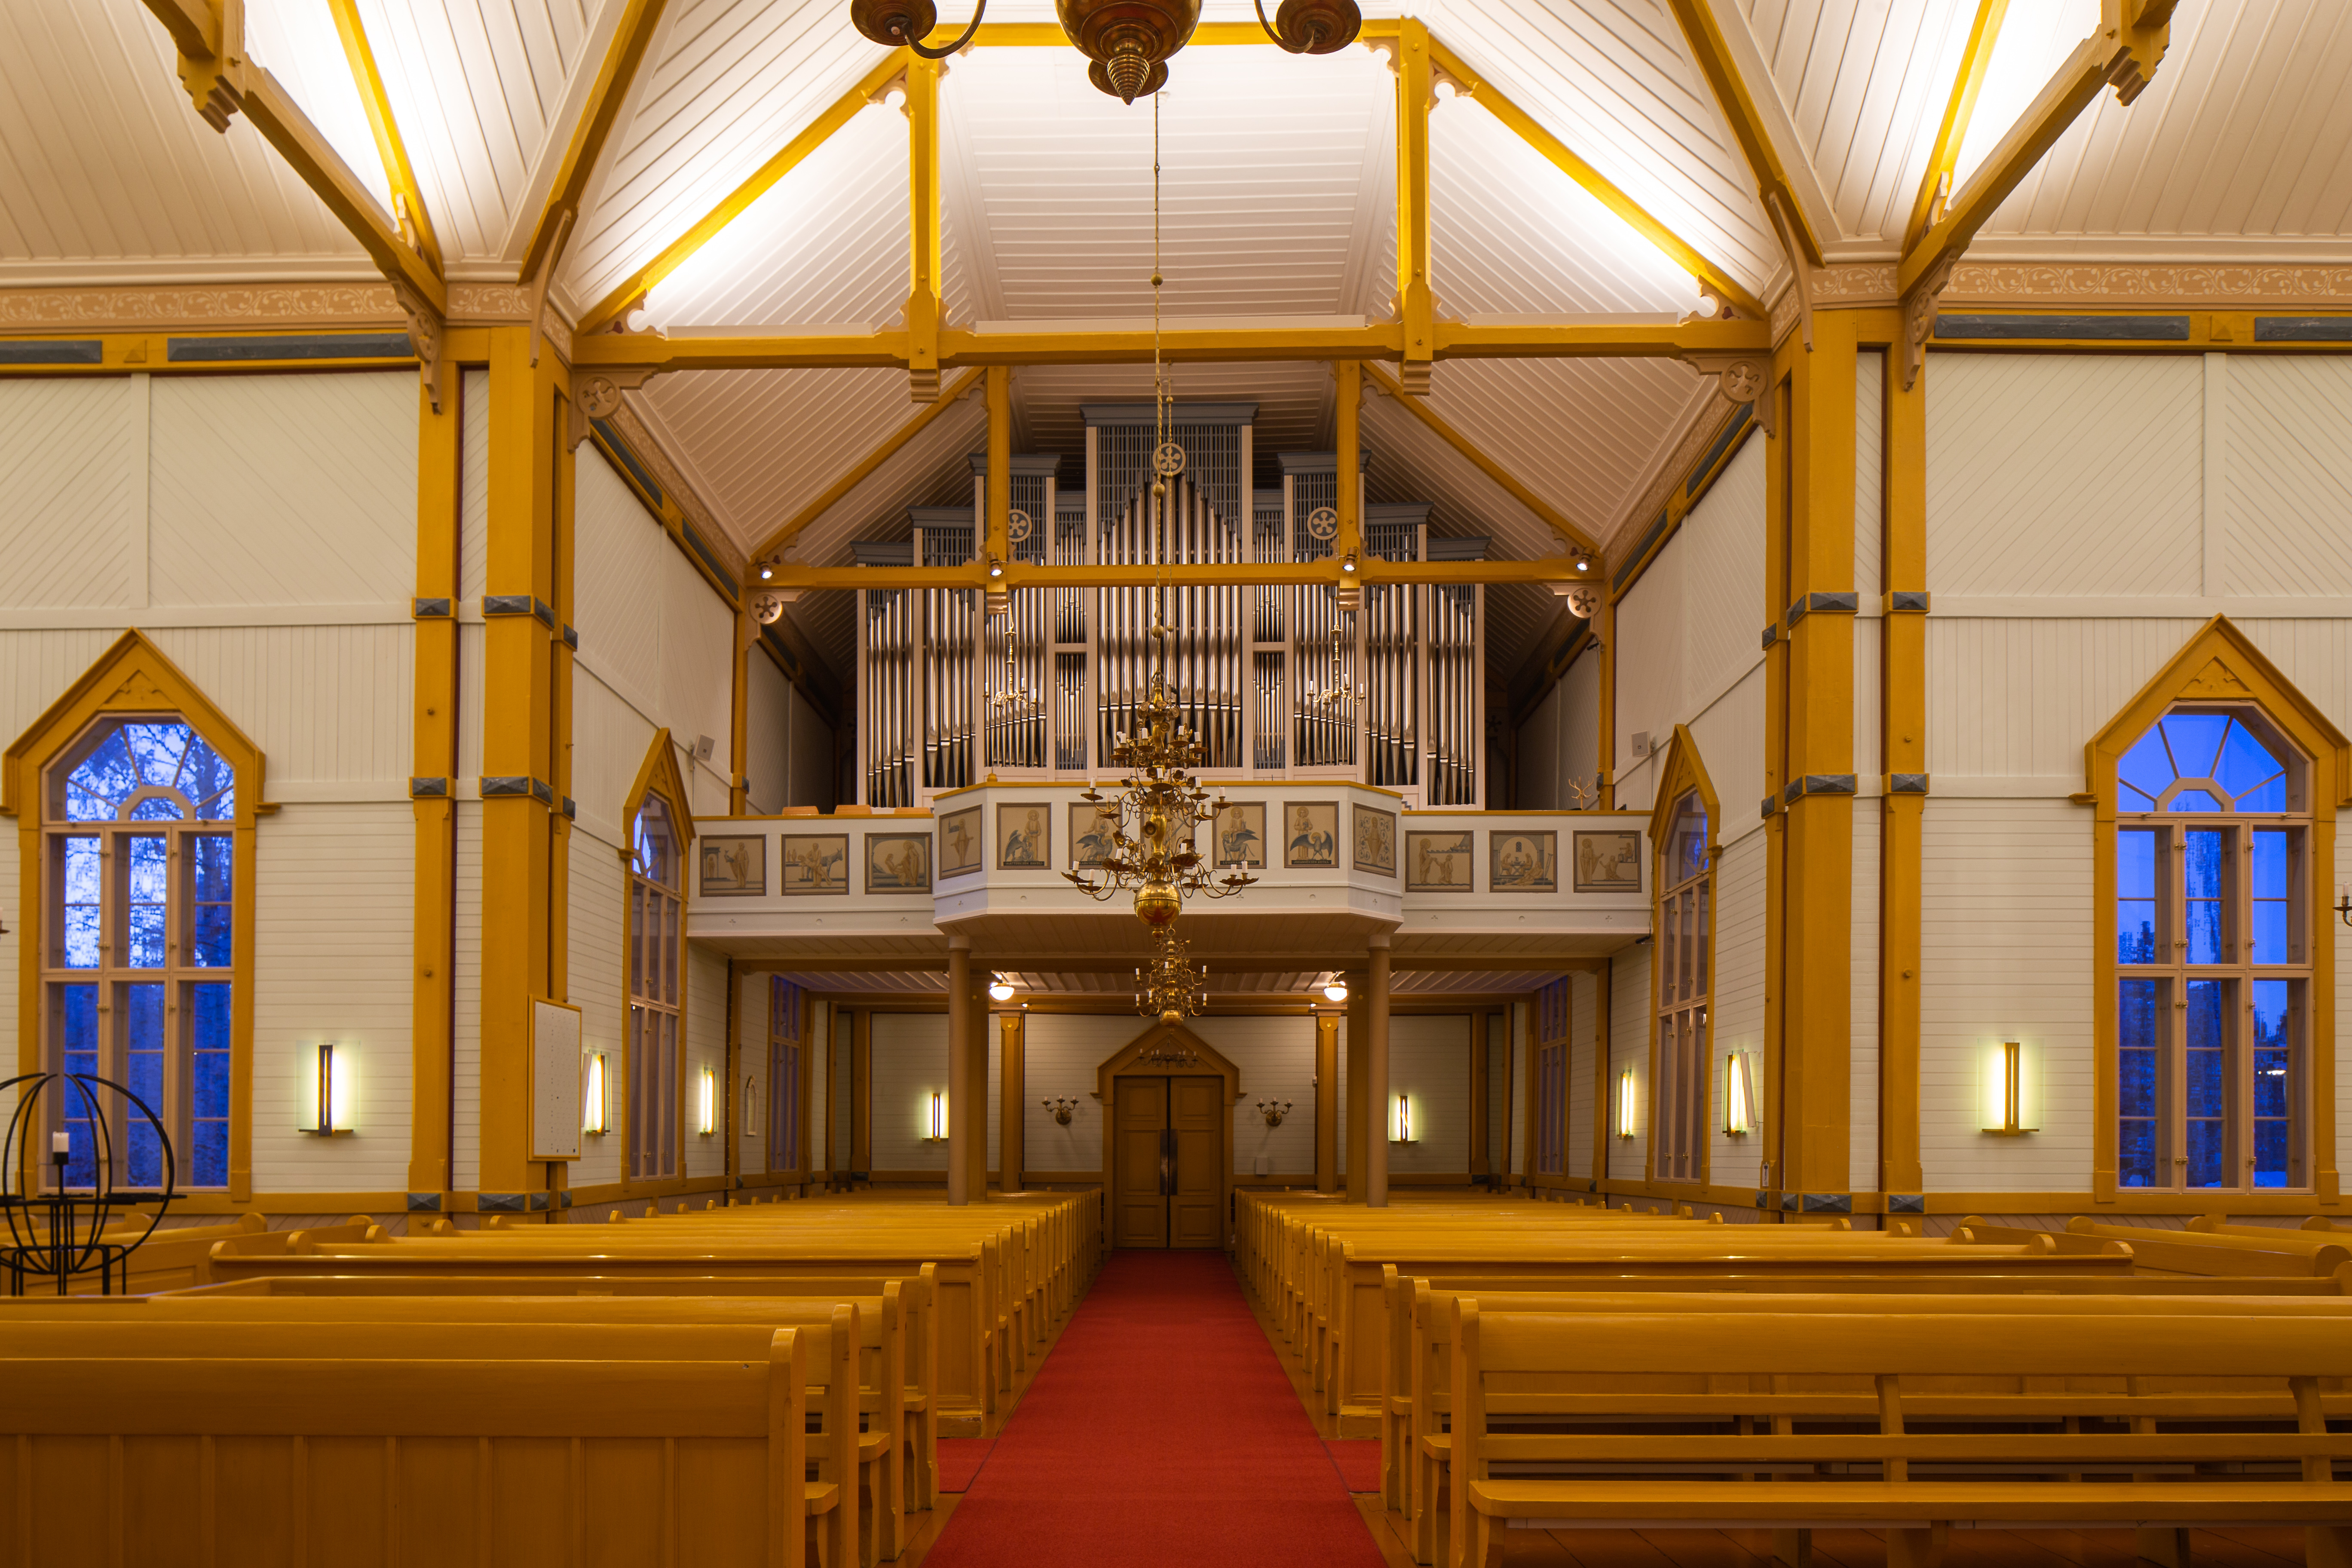 Nivalan kirkon urkuparvi kuvattuna alhaalta käytävältä käsin